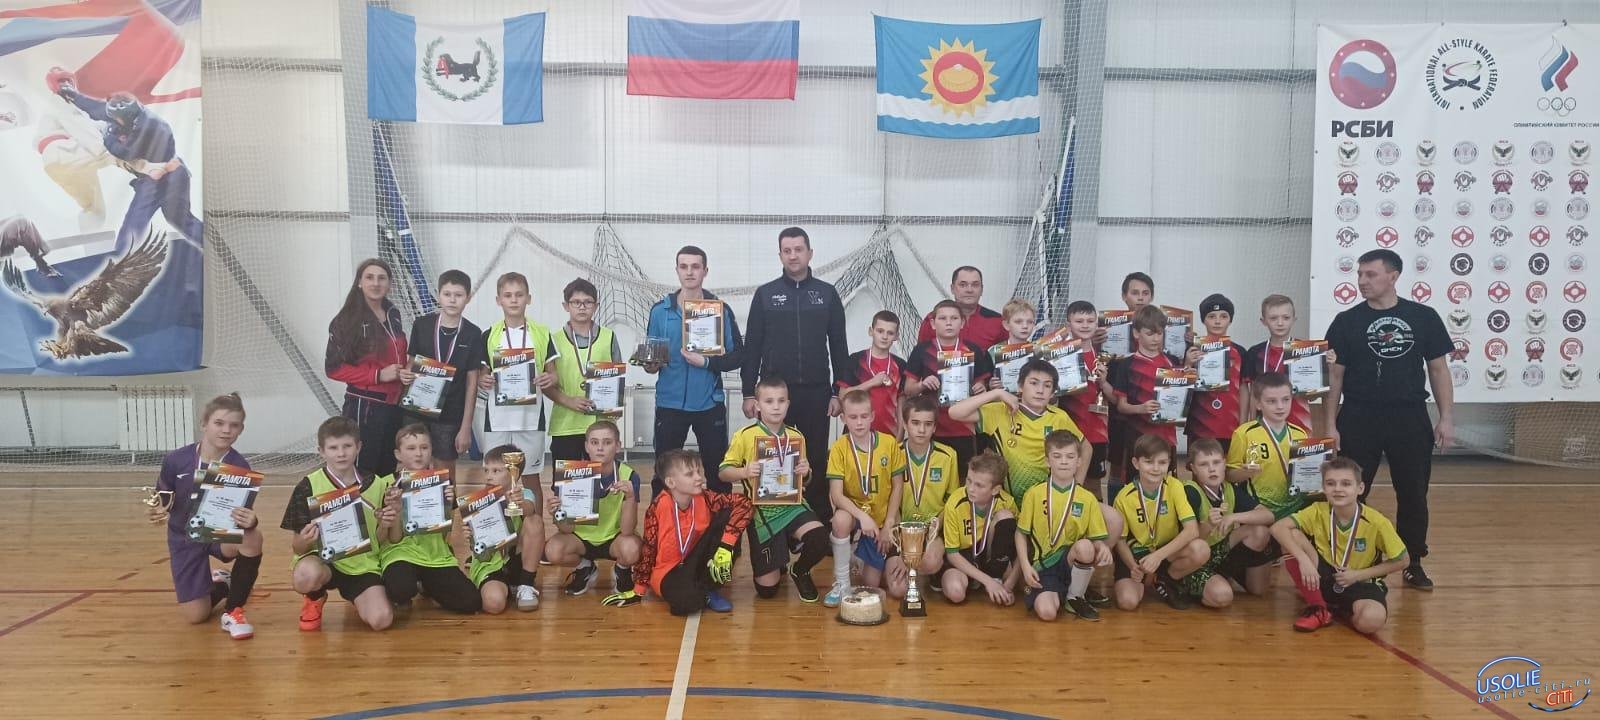 В Усольском районе разыграли Кубок мэра по мини-футболу